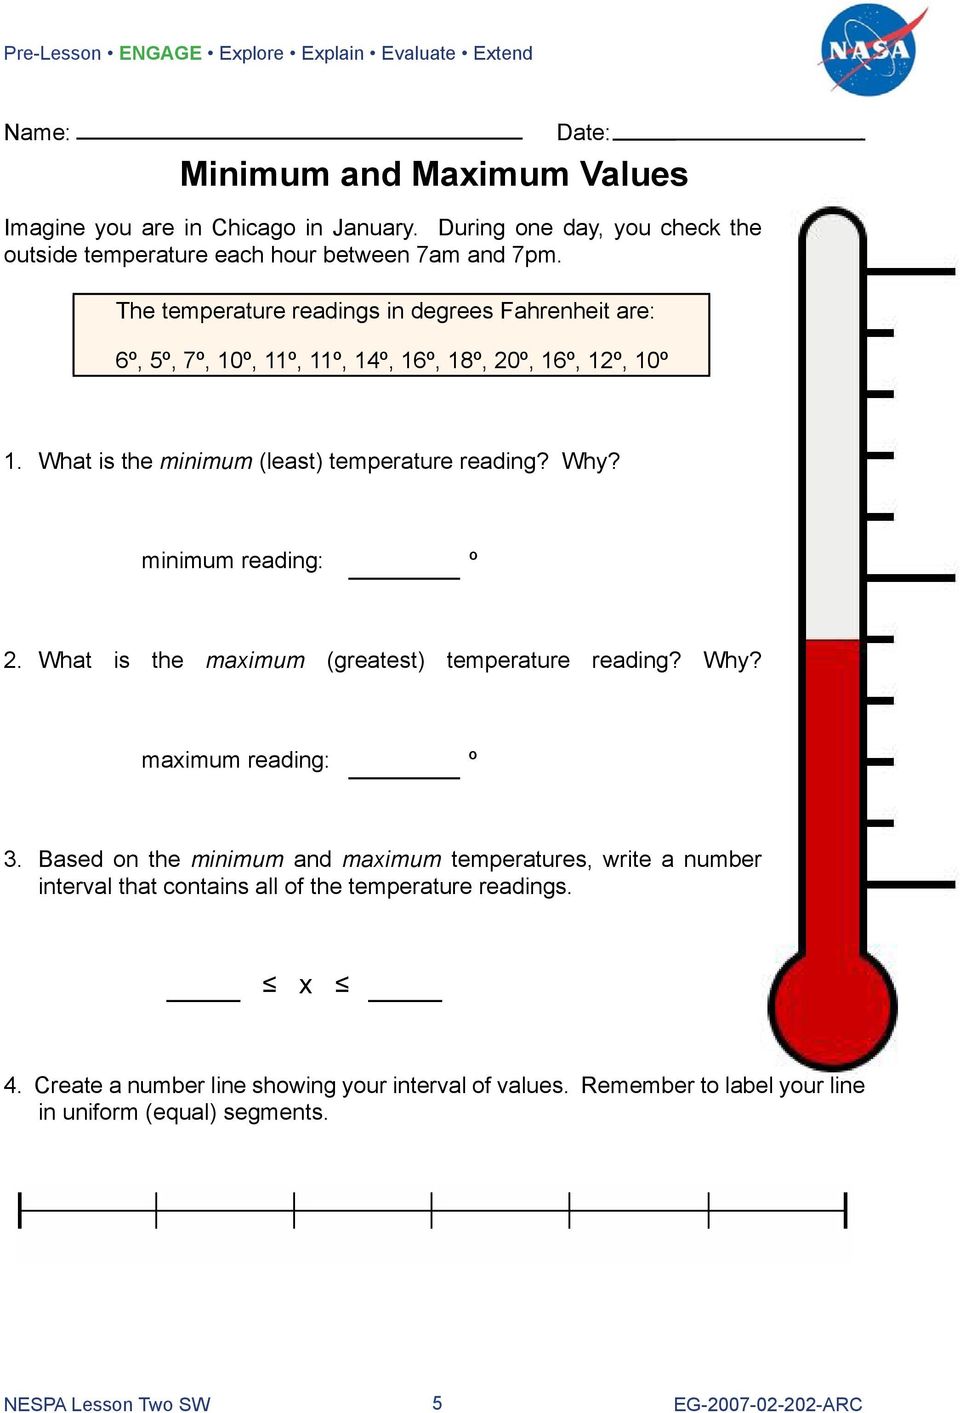 The temperature readings in degrees Fahrenheit are: 6º, 5º, 7º, 10º, 11º, 11º, 14º, 16º, 18º, 20º, 16º, 12º, 10º 1. What is the minimum (least) temperature reading? Why?